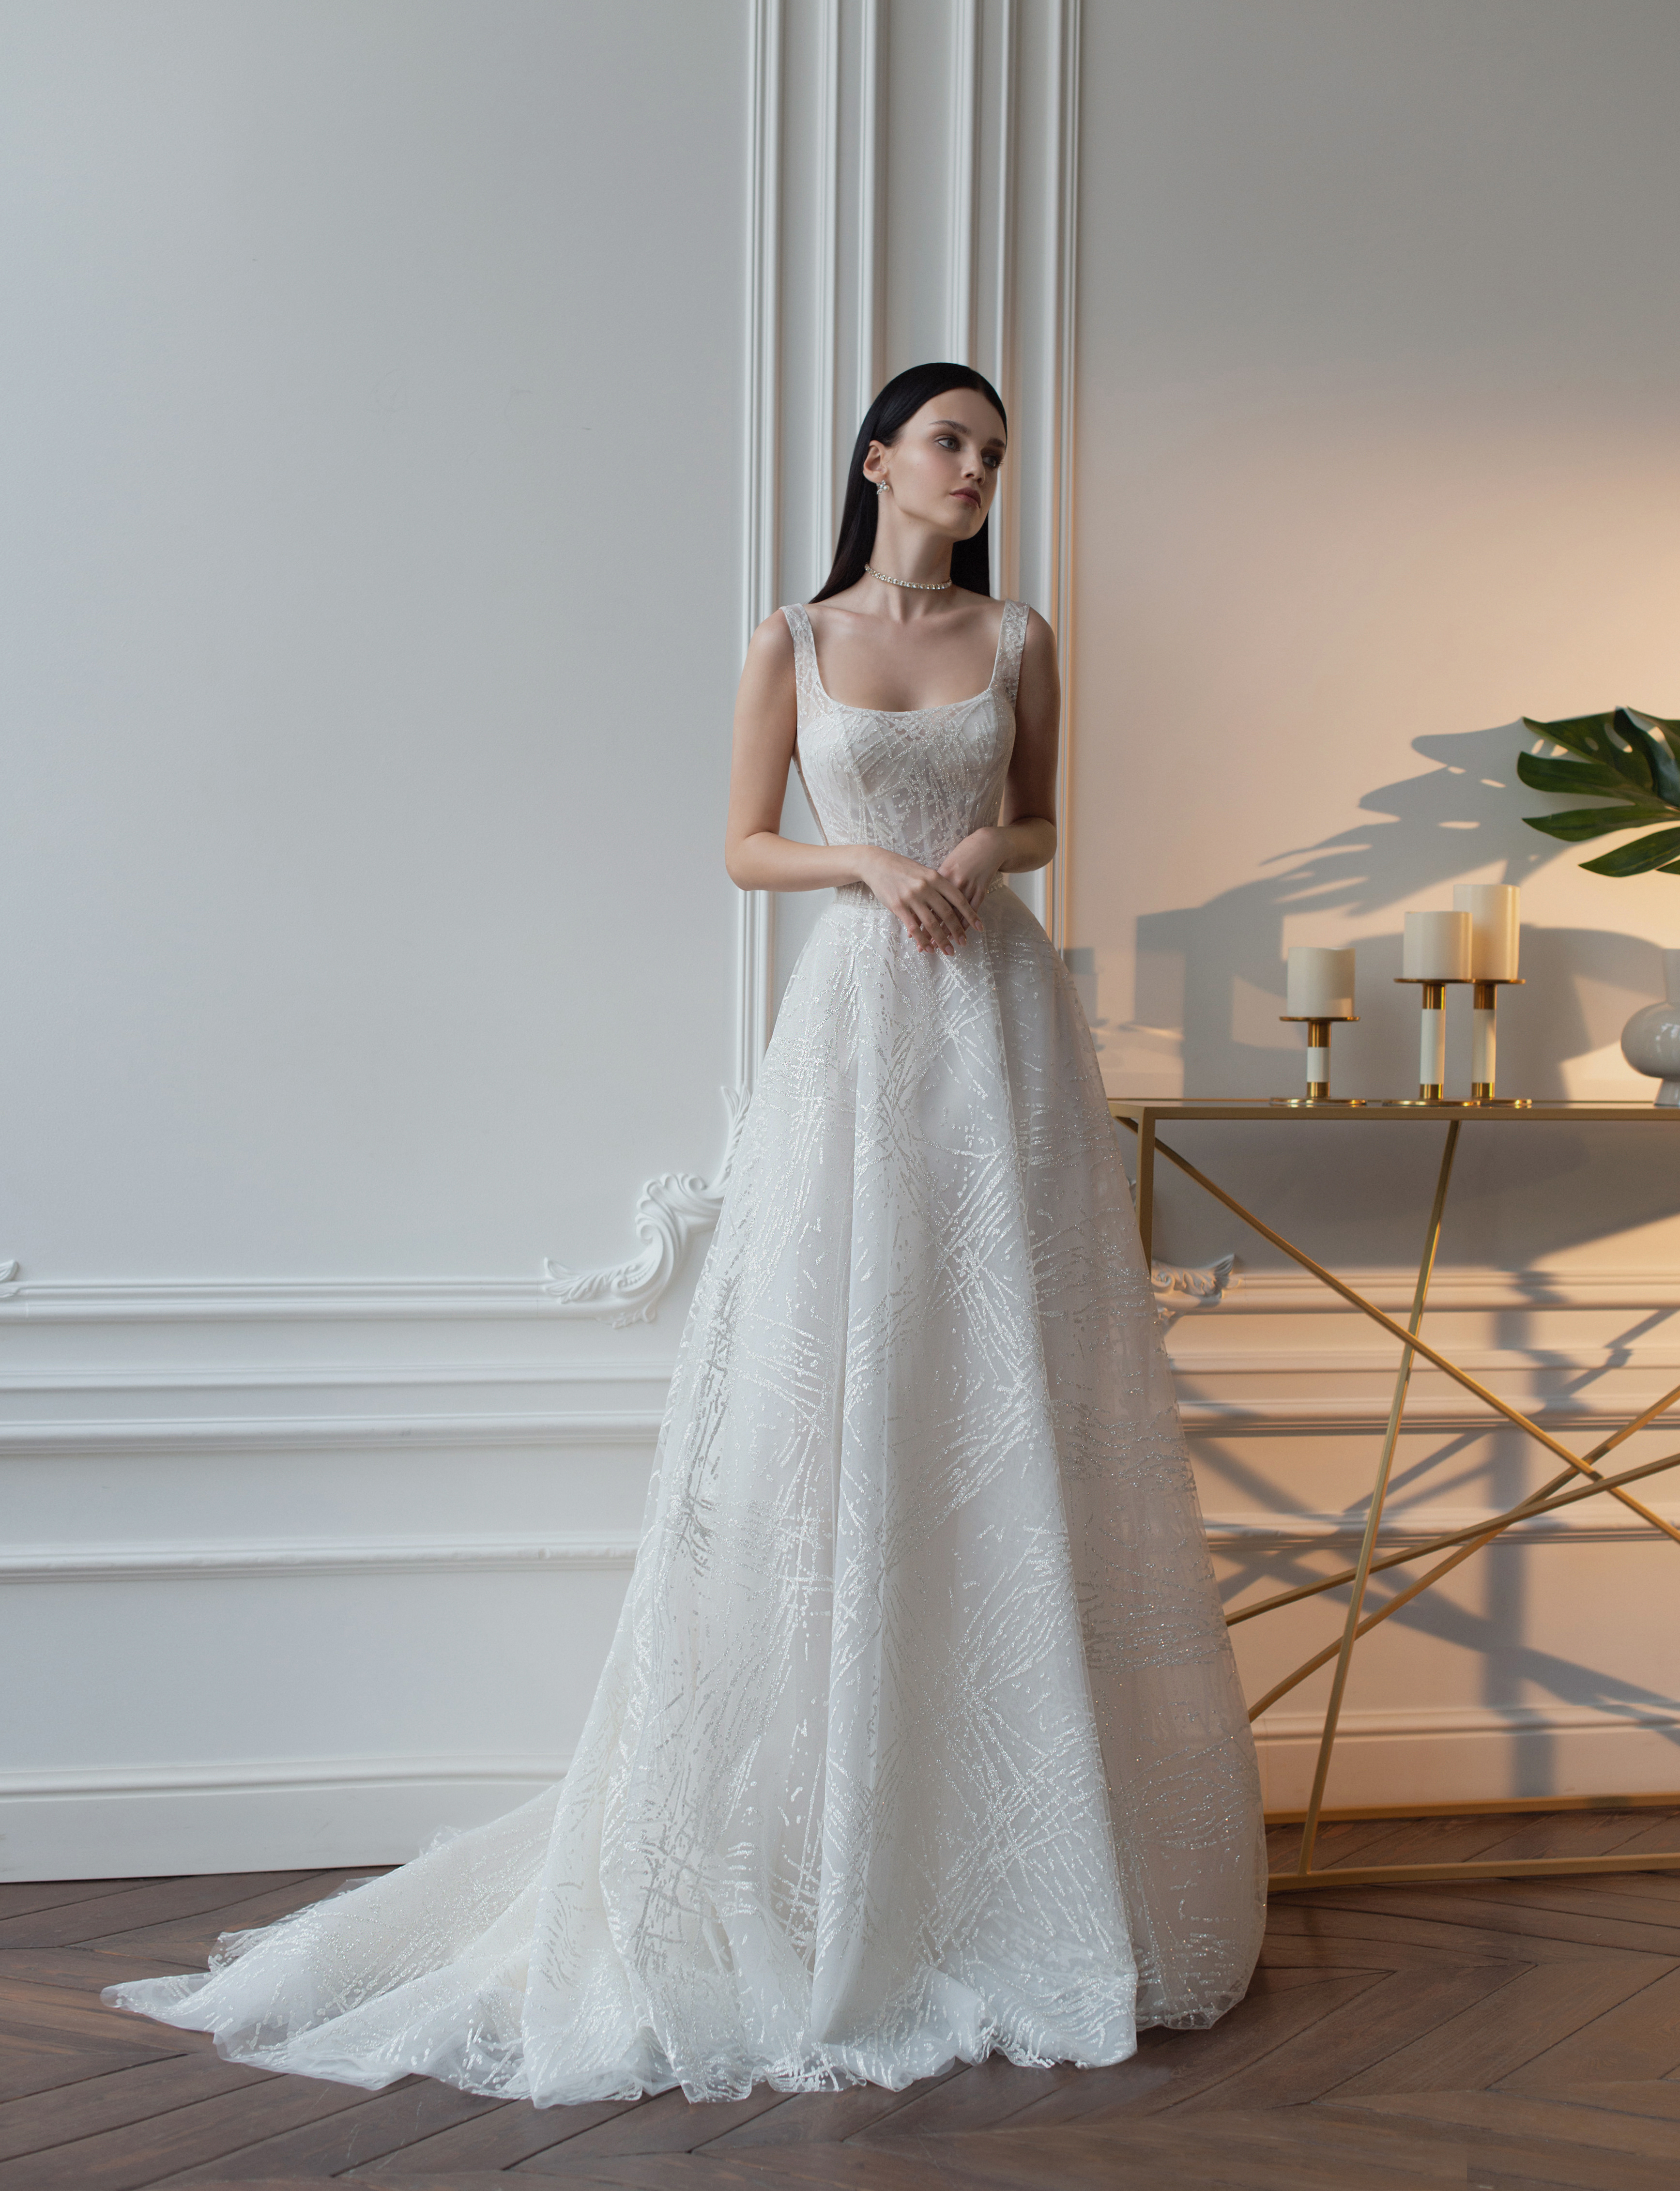 Купить свадебное платье «Агнесс» Татьяна Каплун из коллекции 2022 года в салоне «Мэри Трюфель»